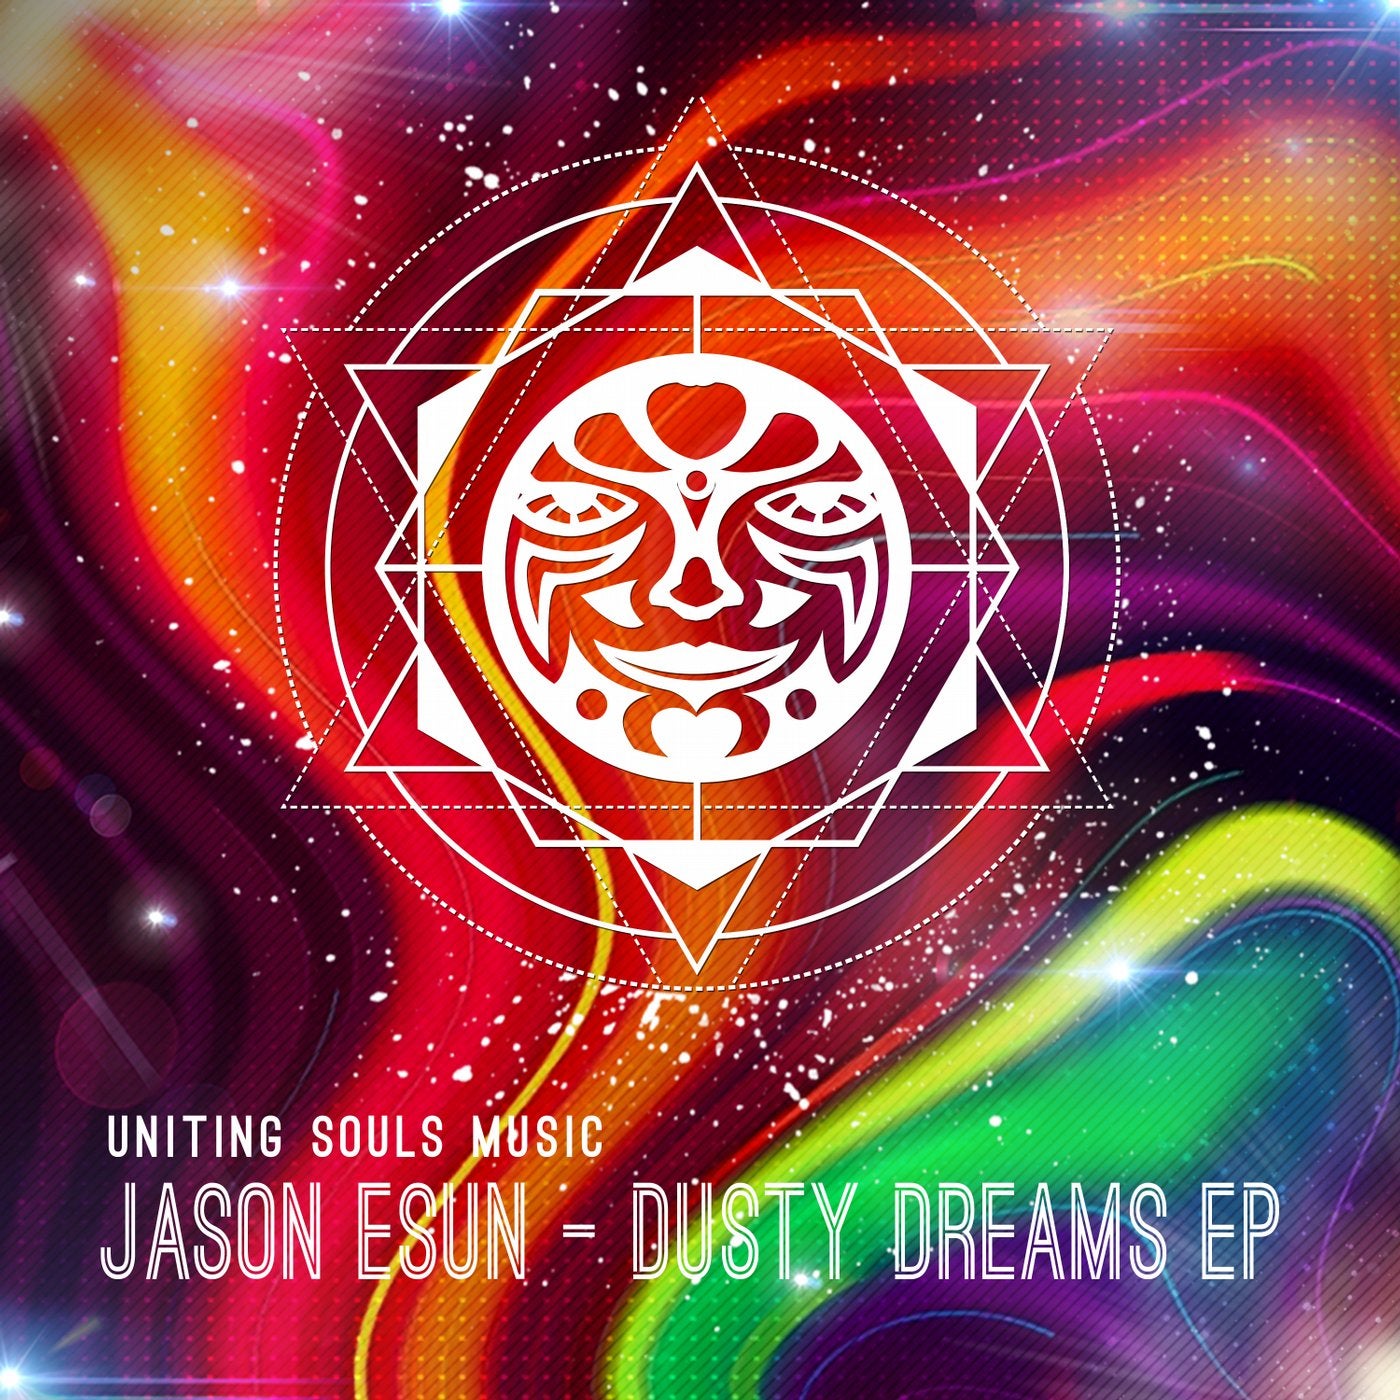 Dusty Dreams EP